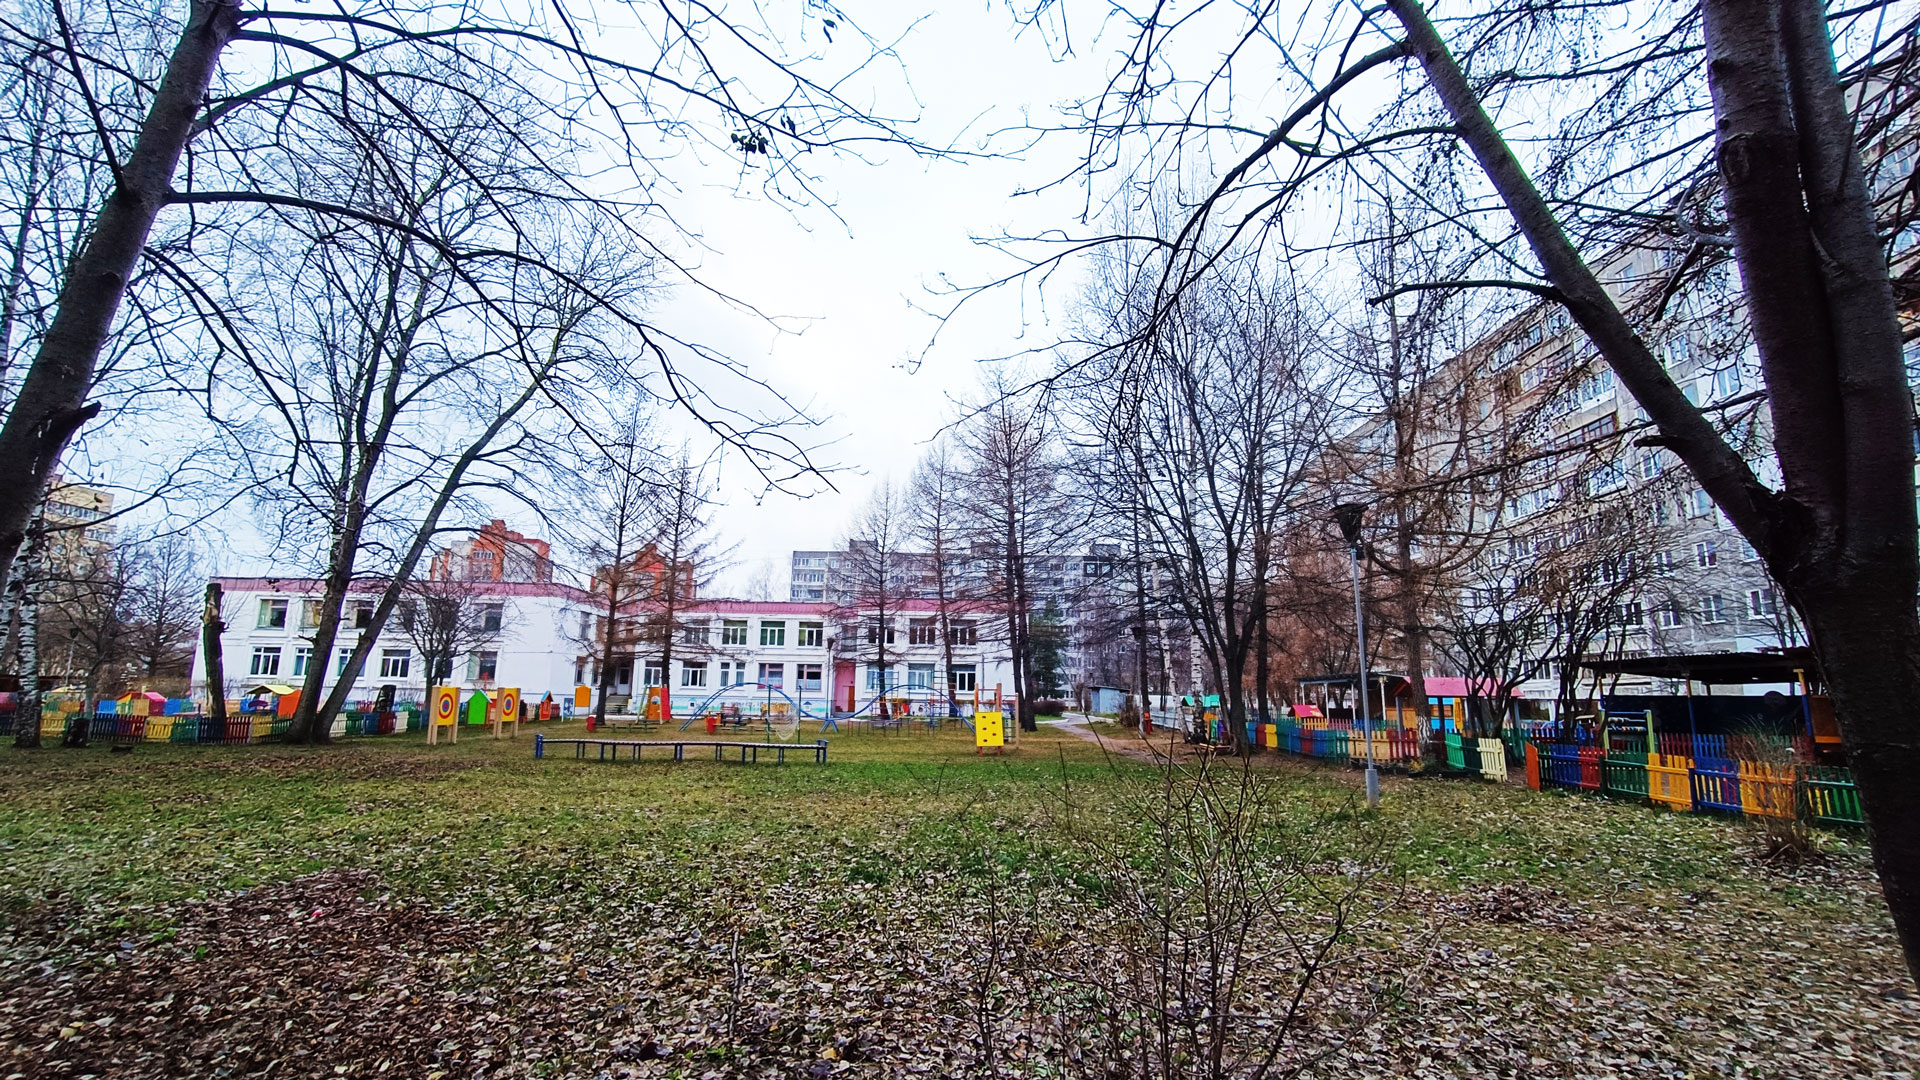 Детский сад 140 Ярославль: общий вид здания и территории.